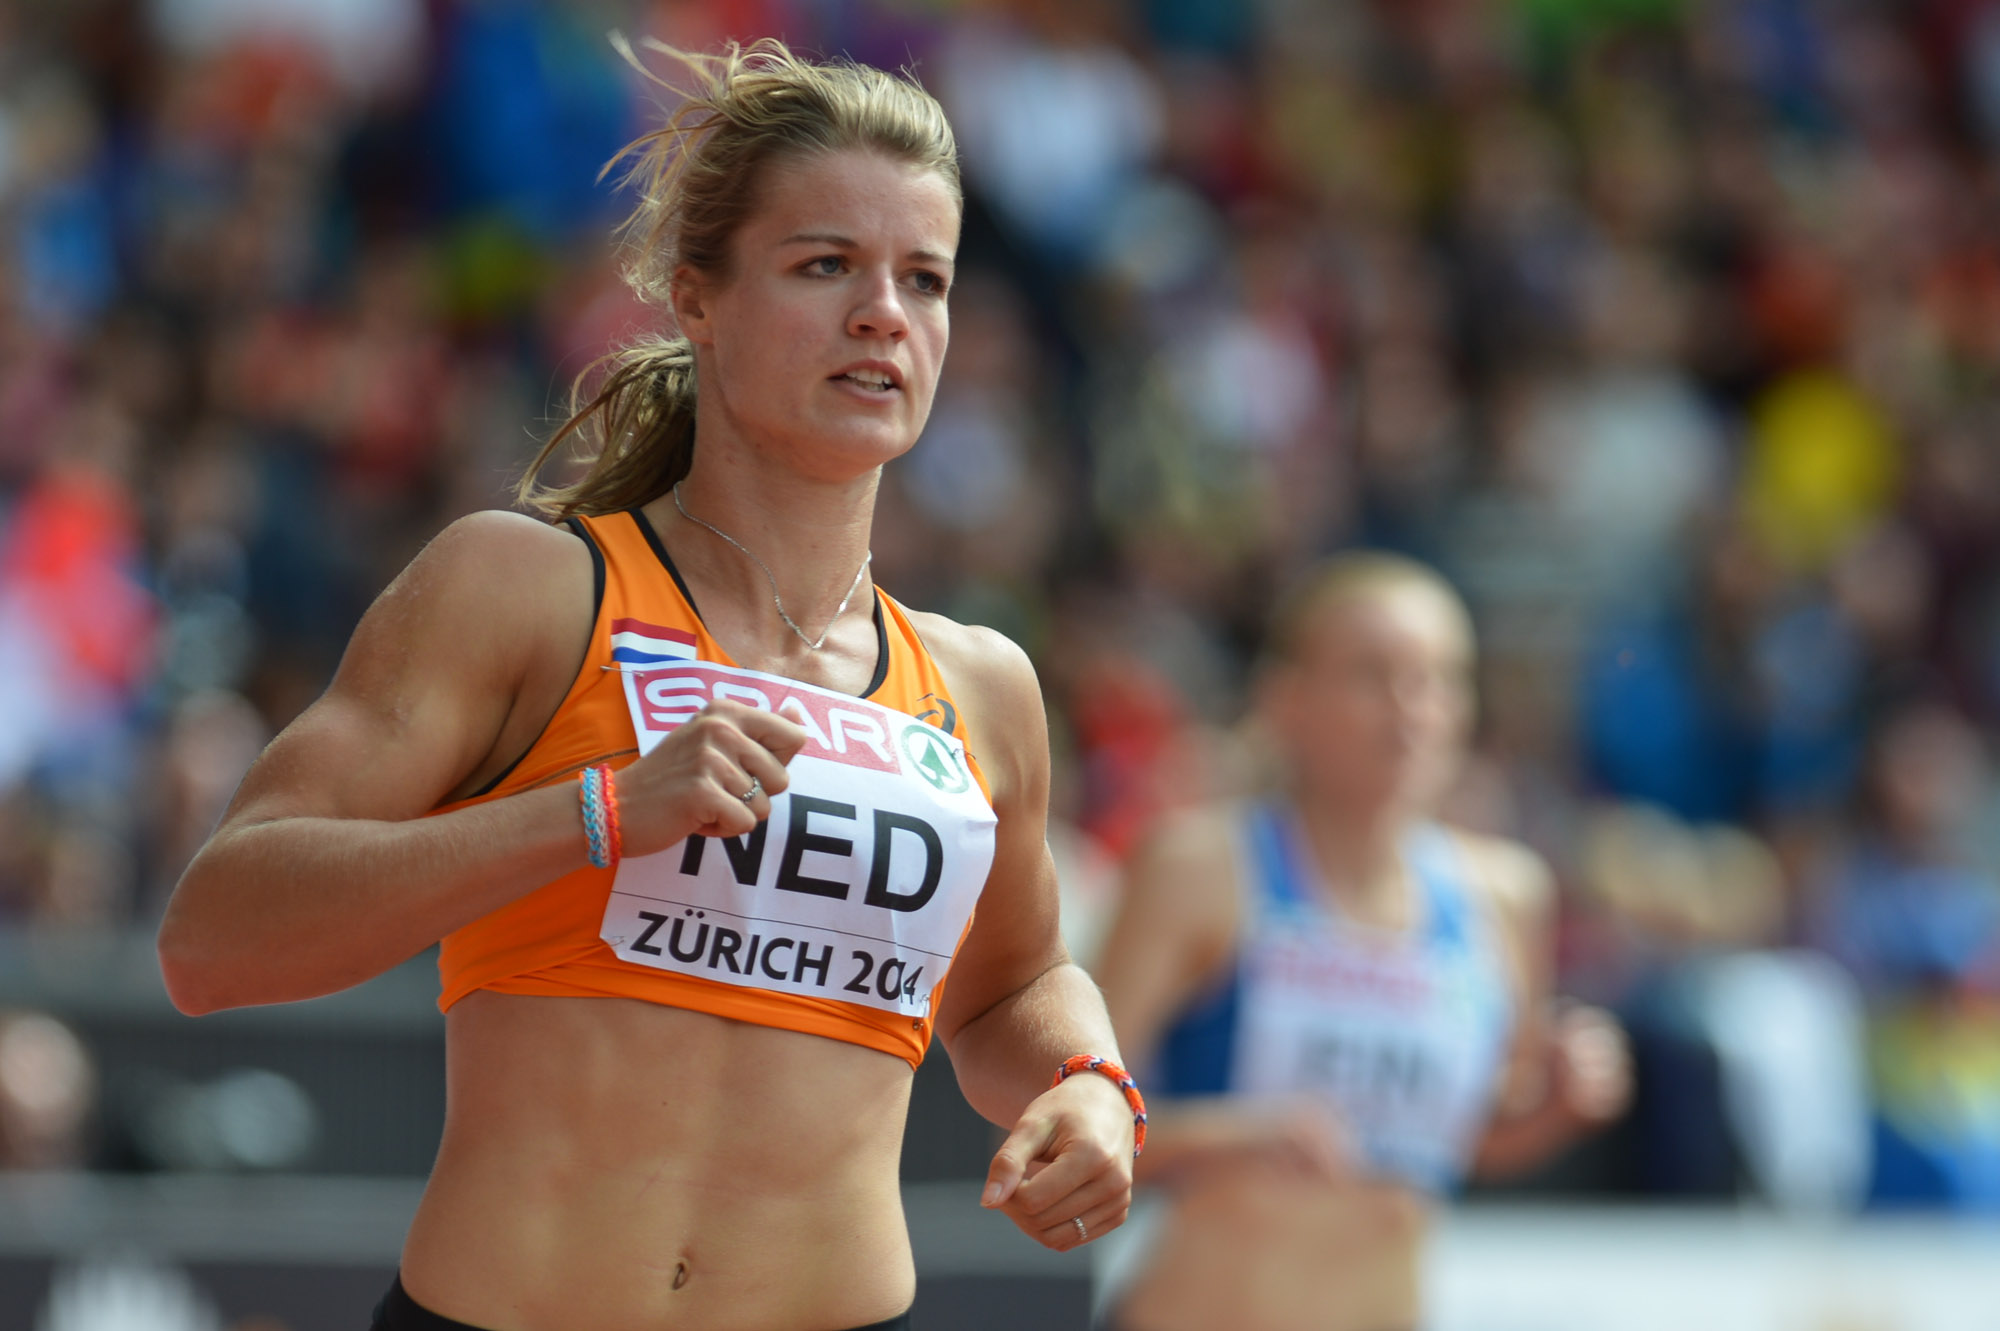 La holandesa ha registrado tiempos de hasta 21.63 segundos en los 200 metros.